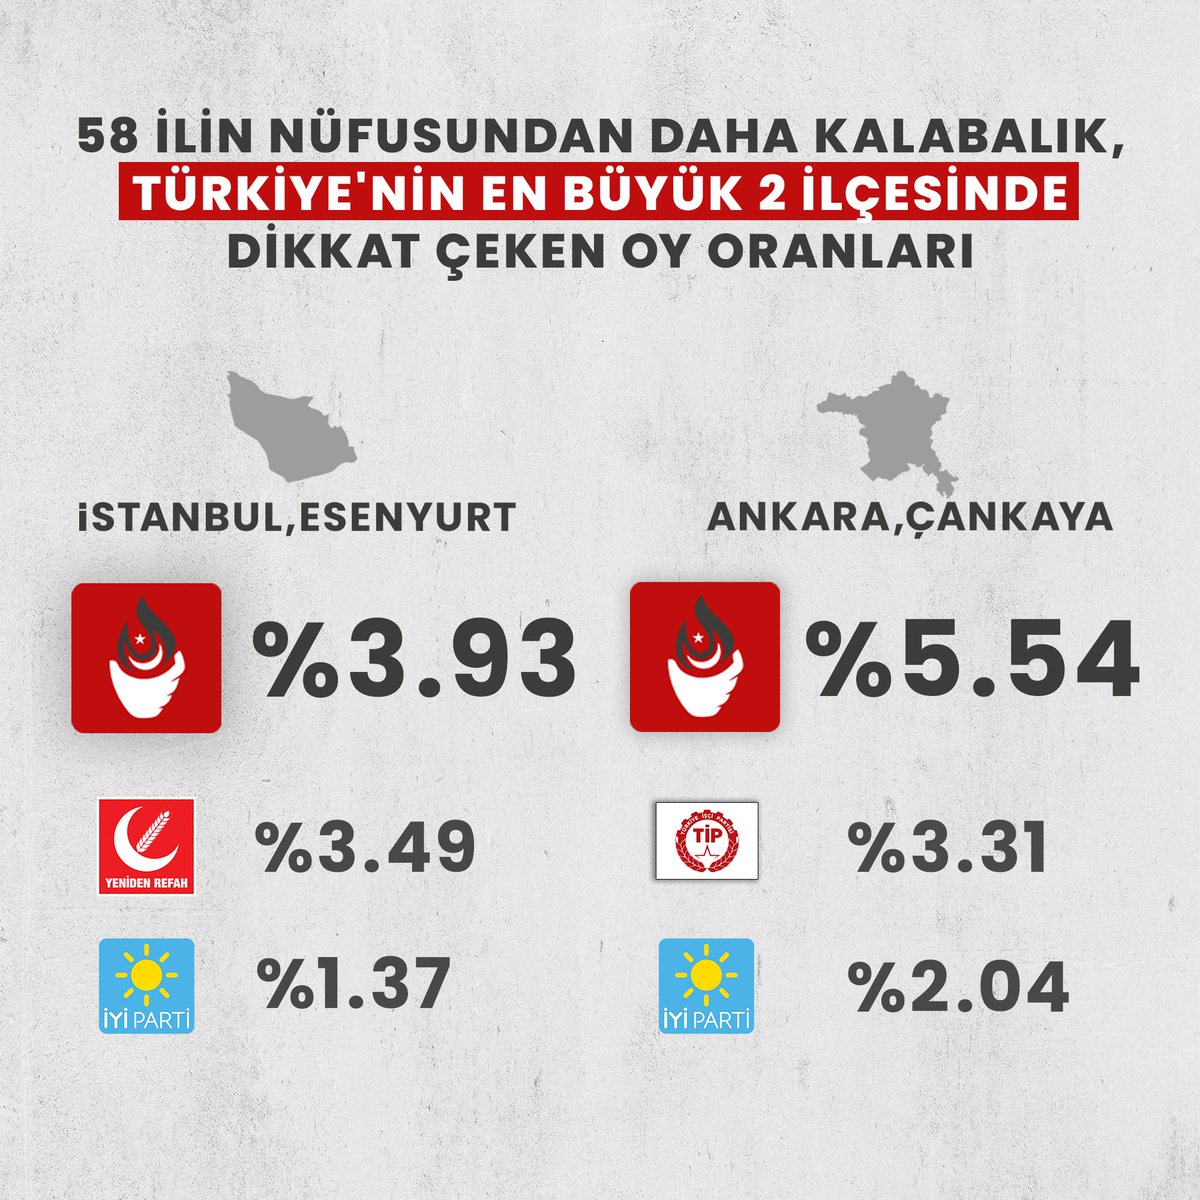 Türkiye'nin en büyük 2 ilçesi Esenyurt ve Çankaya'da dikkat çeken oy oranları:

Zafer Partisi, 3. parti.